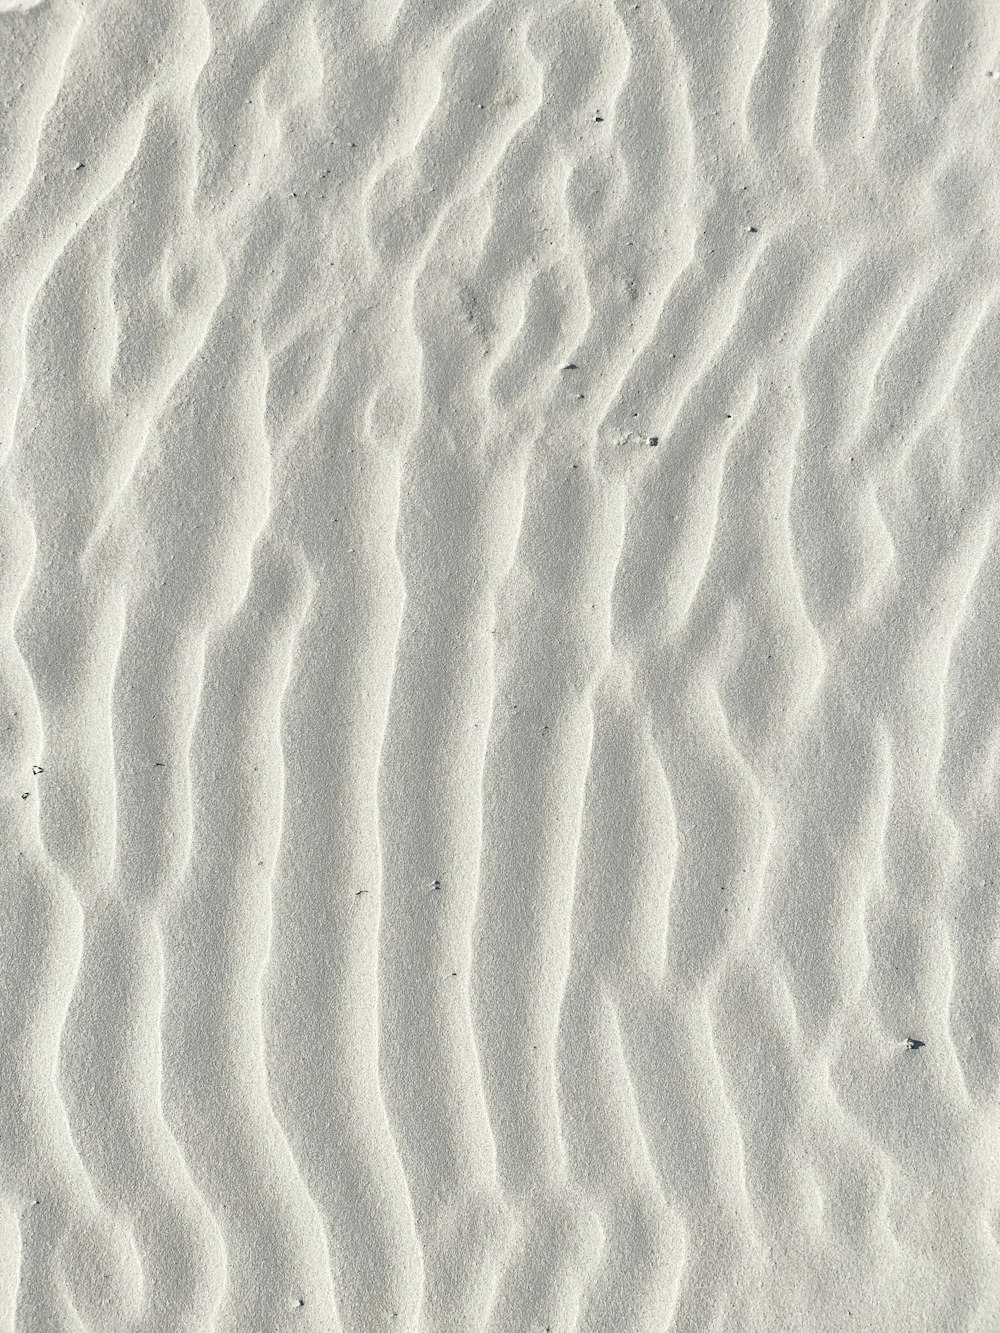 Macrophotographie de sable blanc